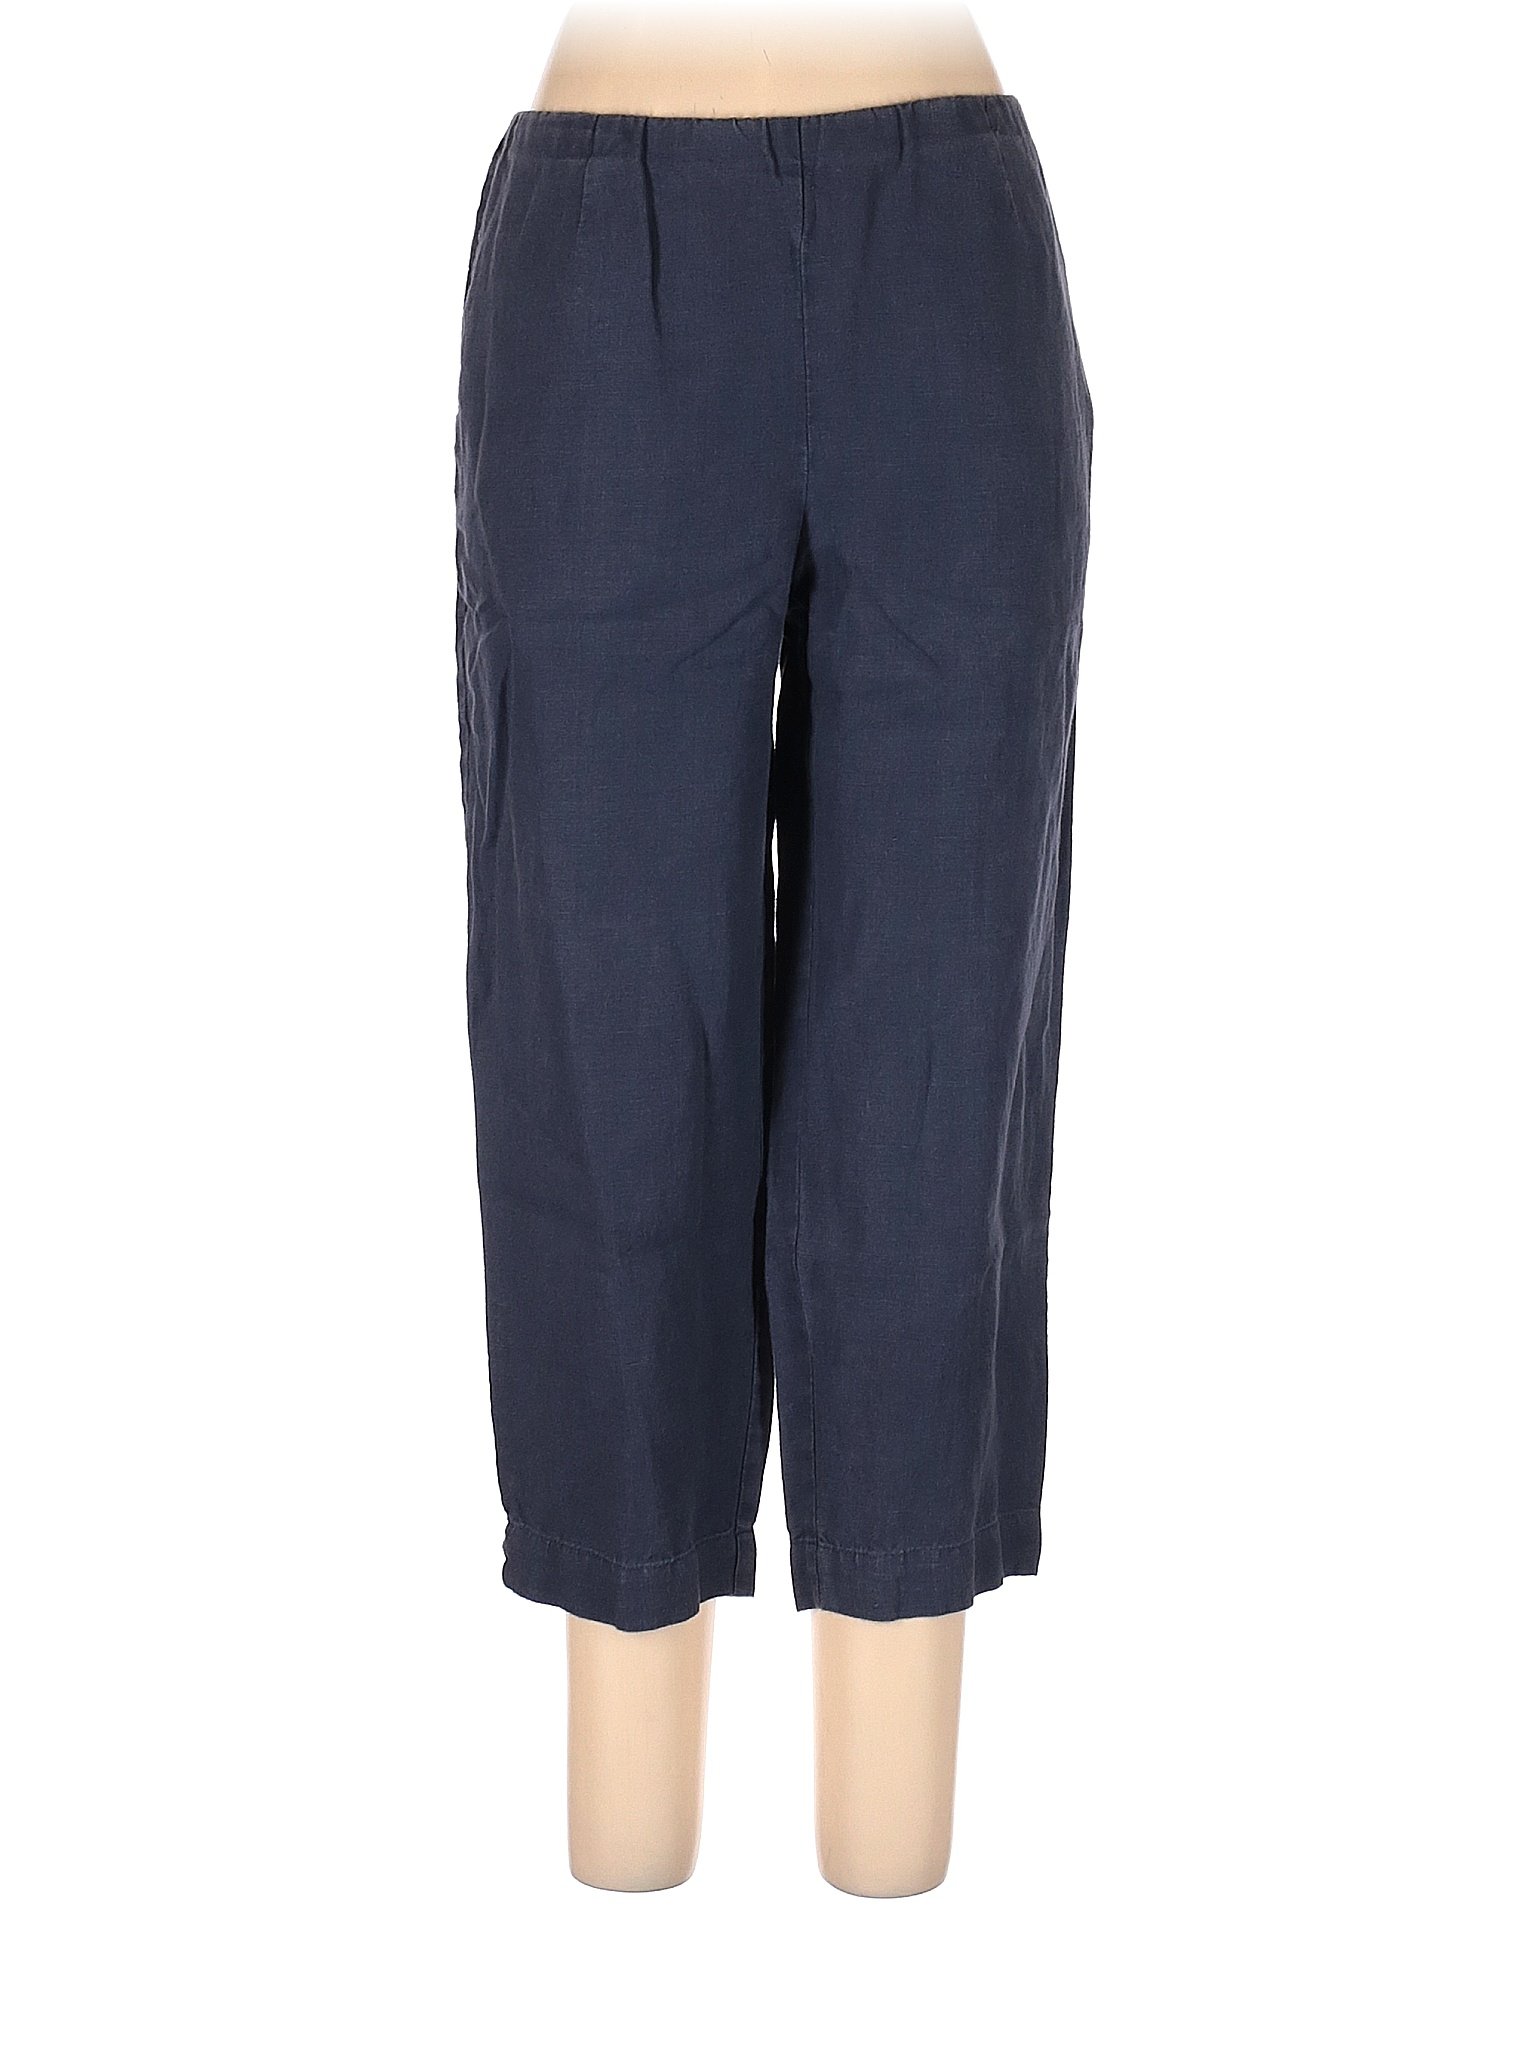 J.Jill 100% Linen Solid Blue Gray Linen Pants Size M - 78% off | thredUP